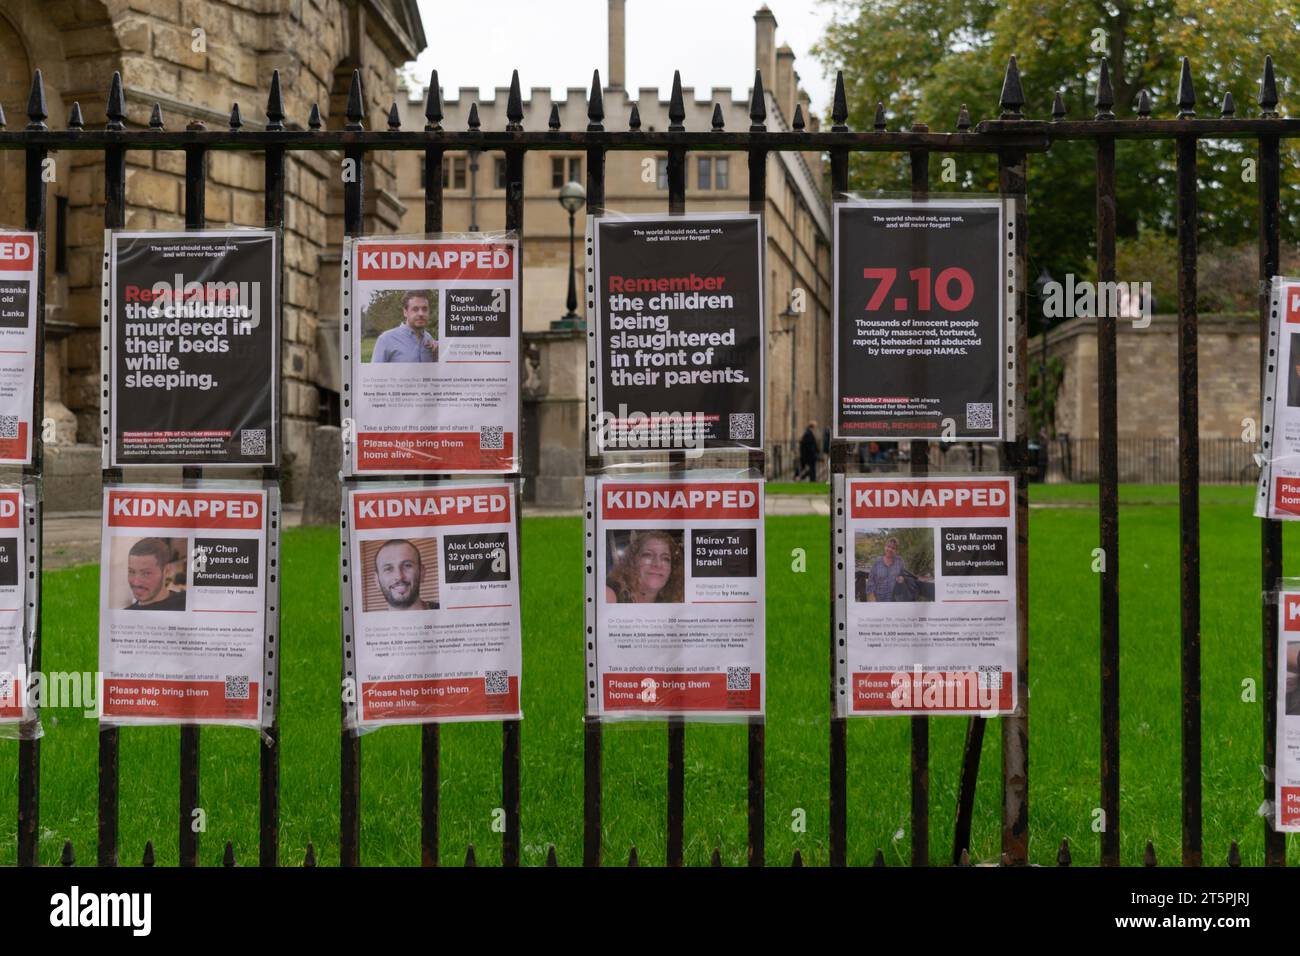 Affiches d'Israéliens kidnappés sur la clôture de Radcliffe Camera. Texte de l'affiche 7,10. Oxford Royaume-Uni. Banque D'Images